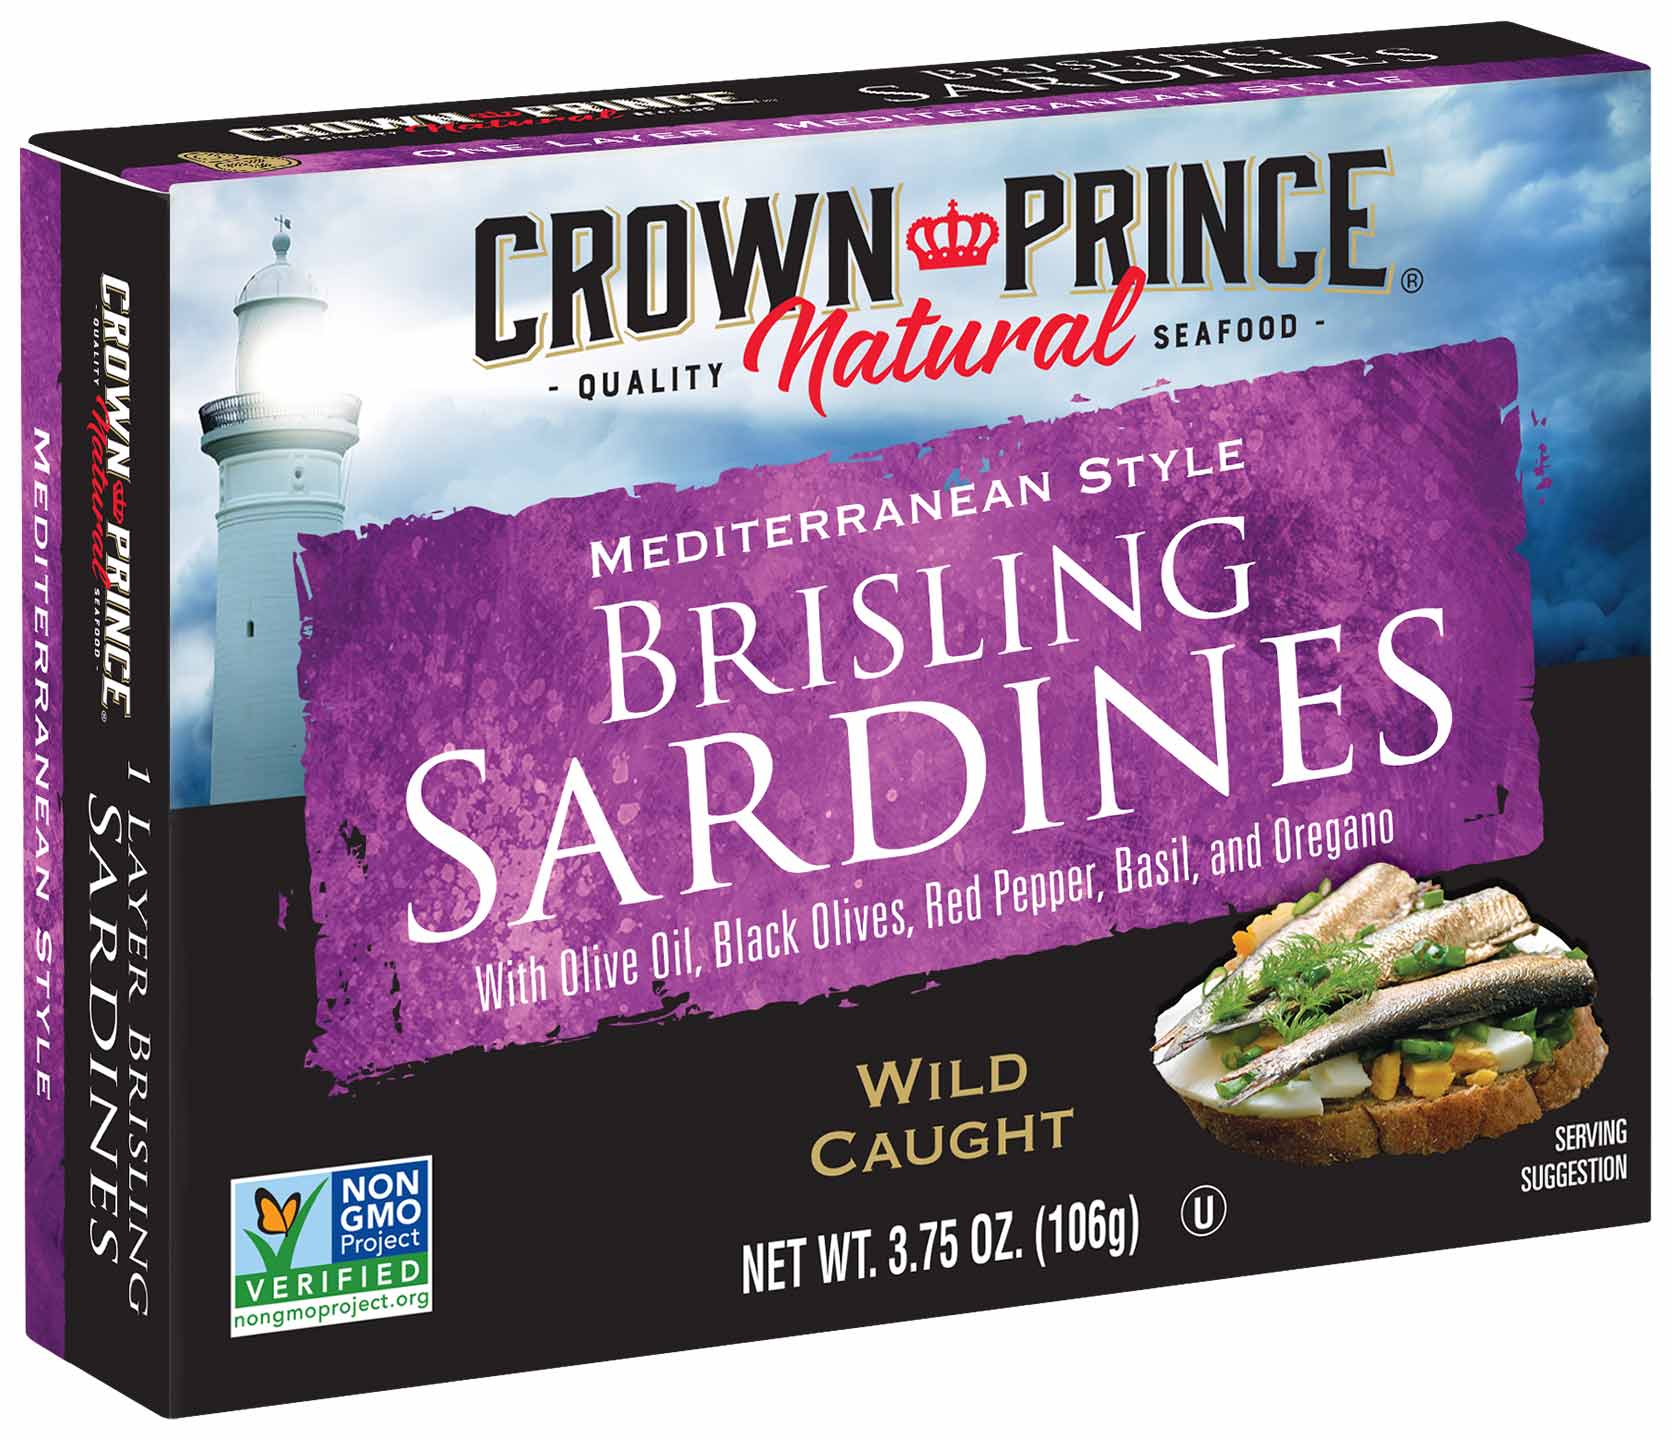 Crown Prince Natural Mediterranean Style Brisling Sardines